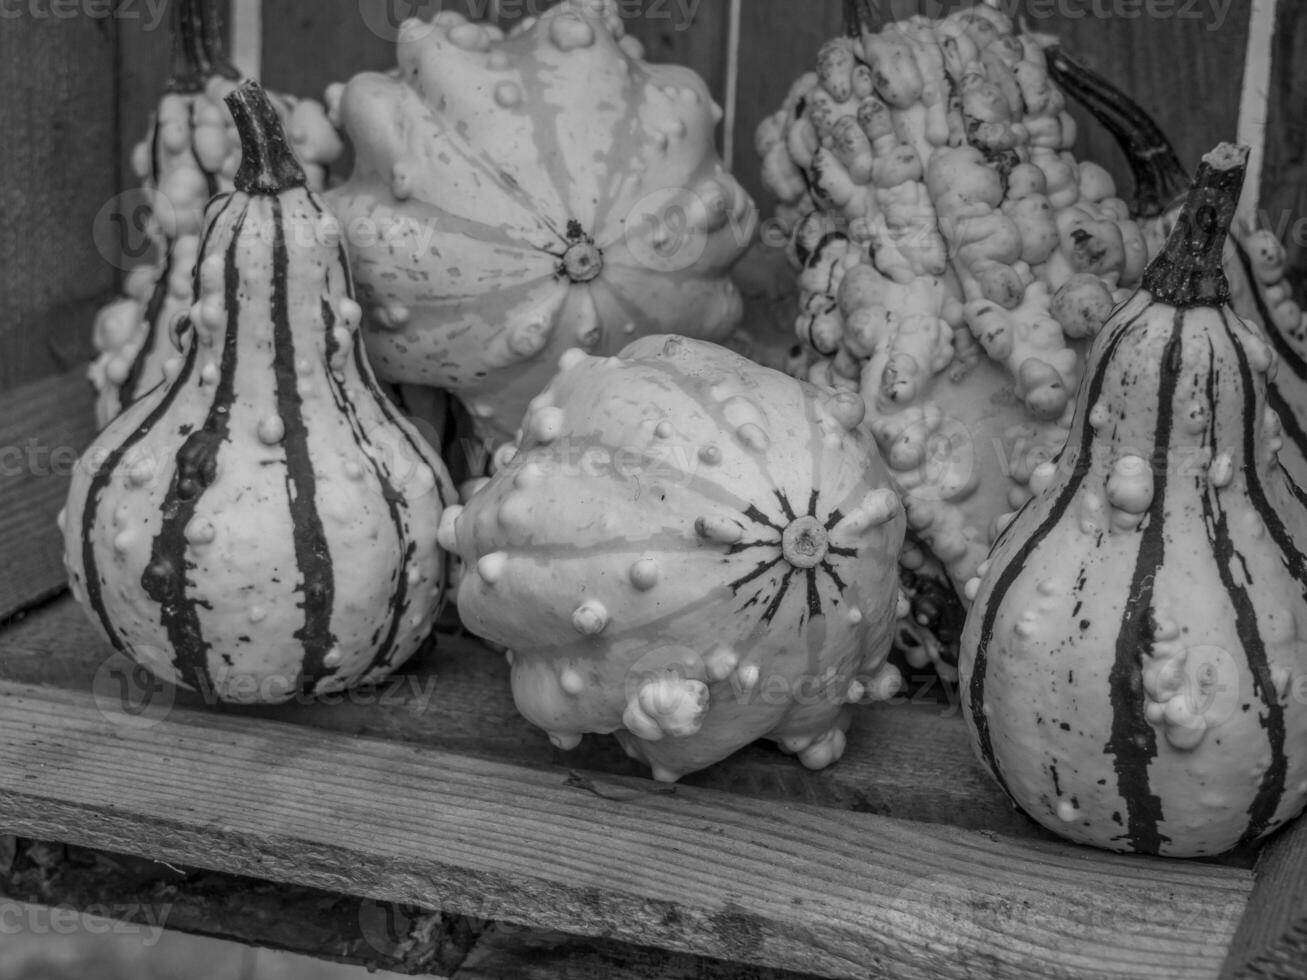 pumpkins in the german westphalia photo